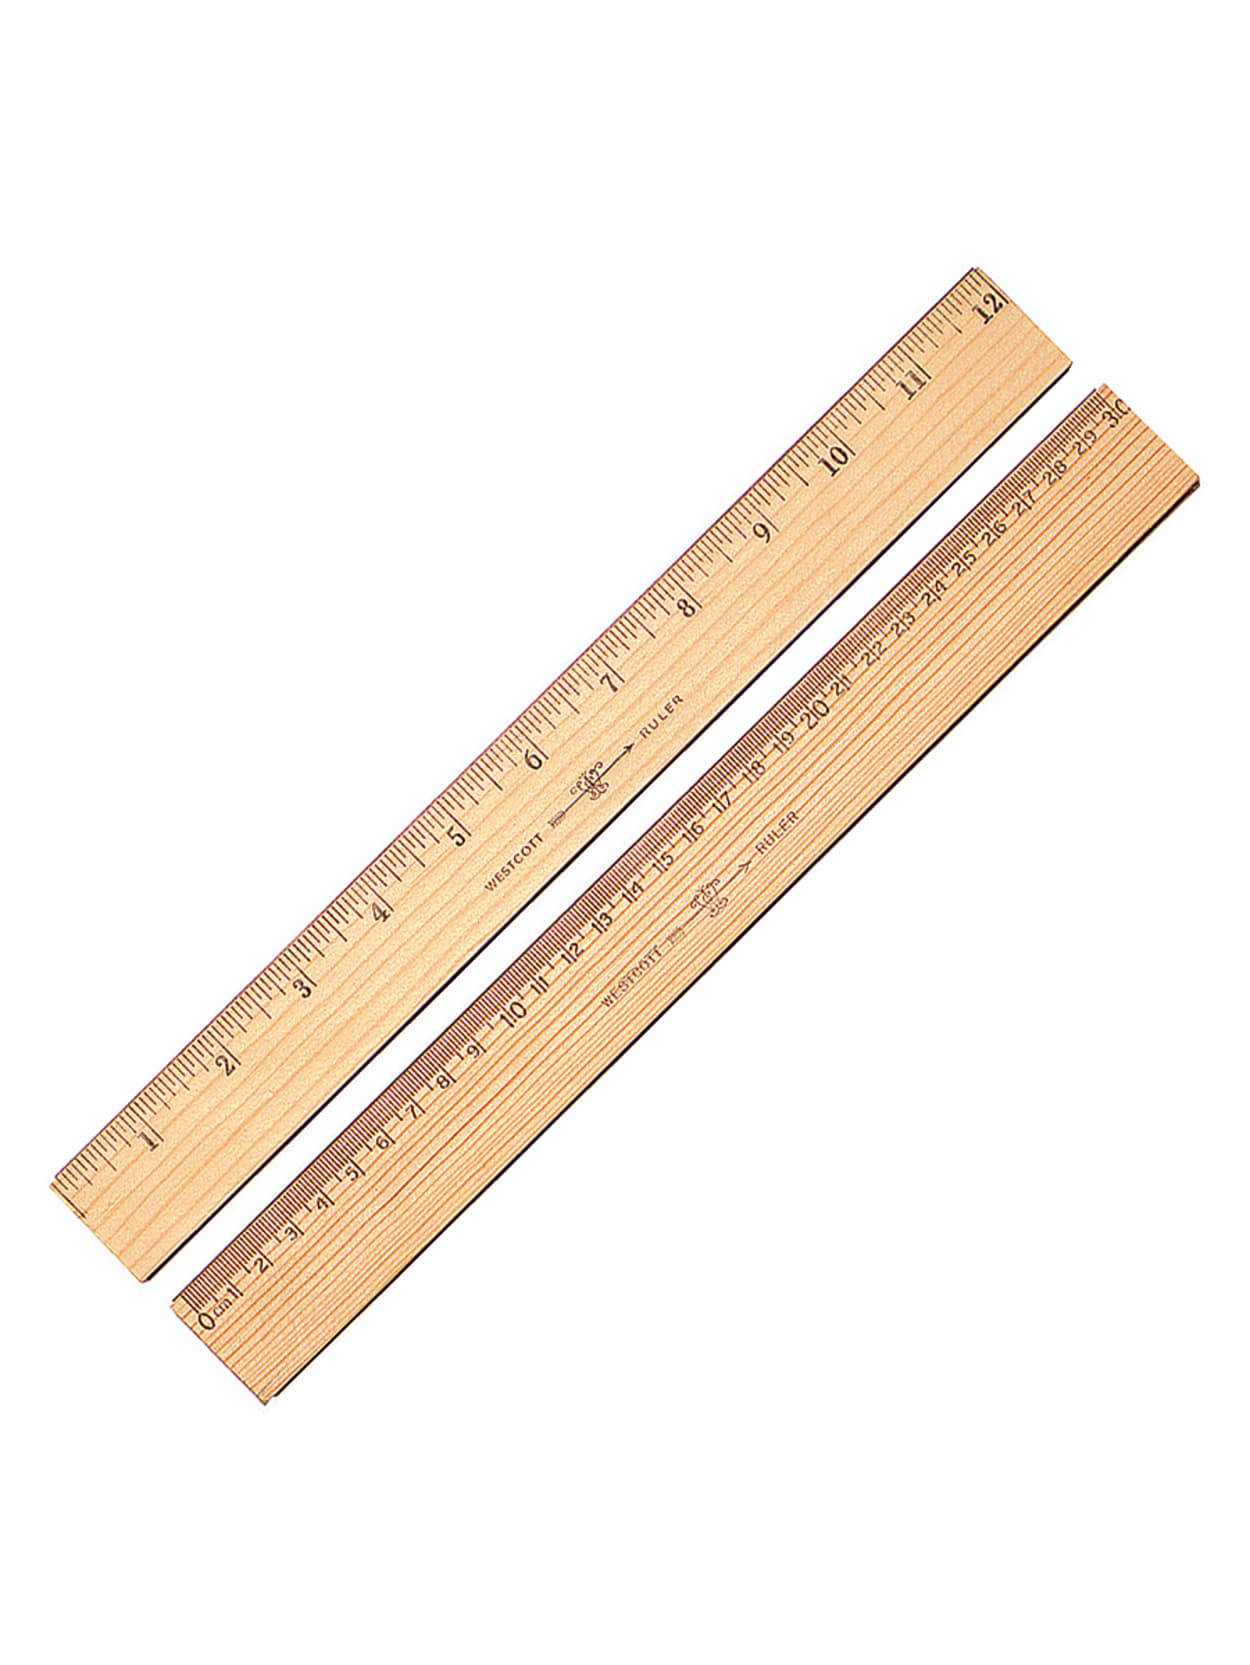 real metric ruler